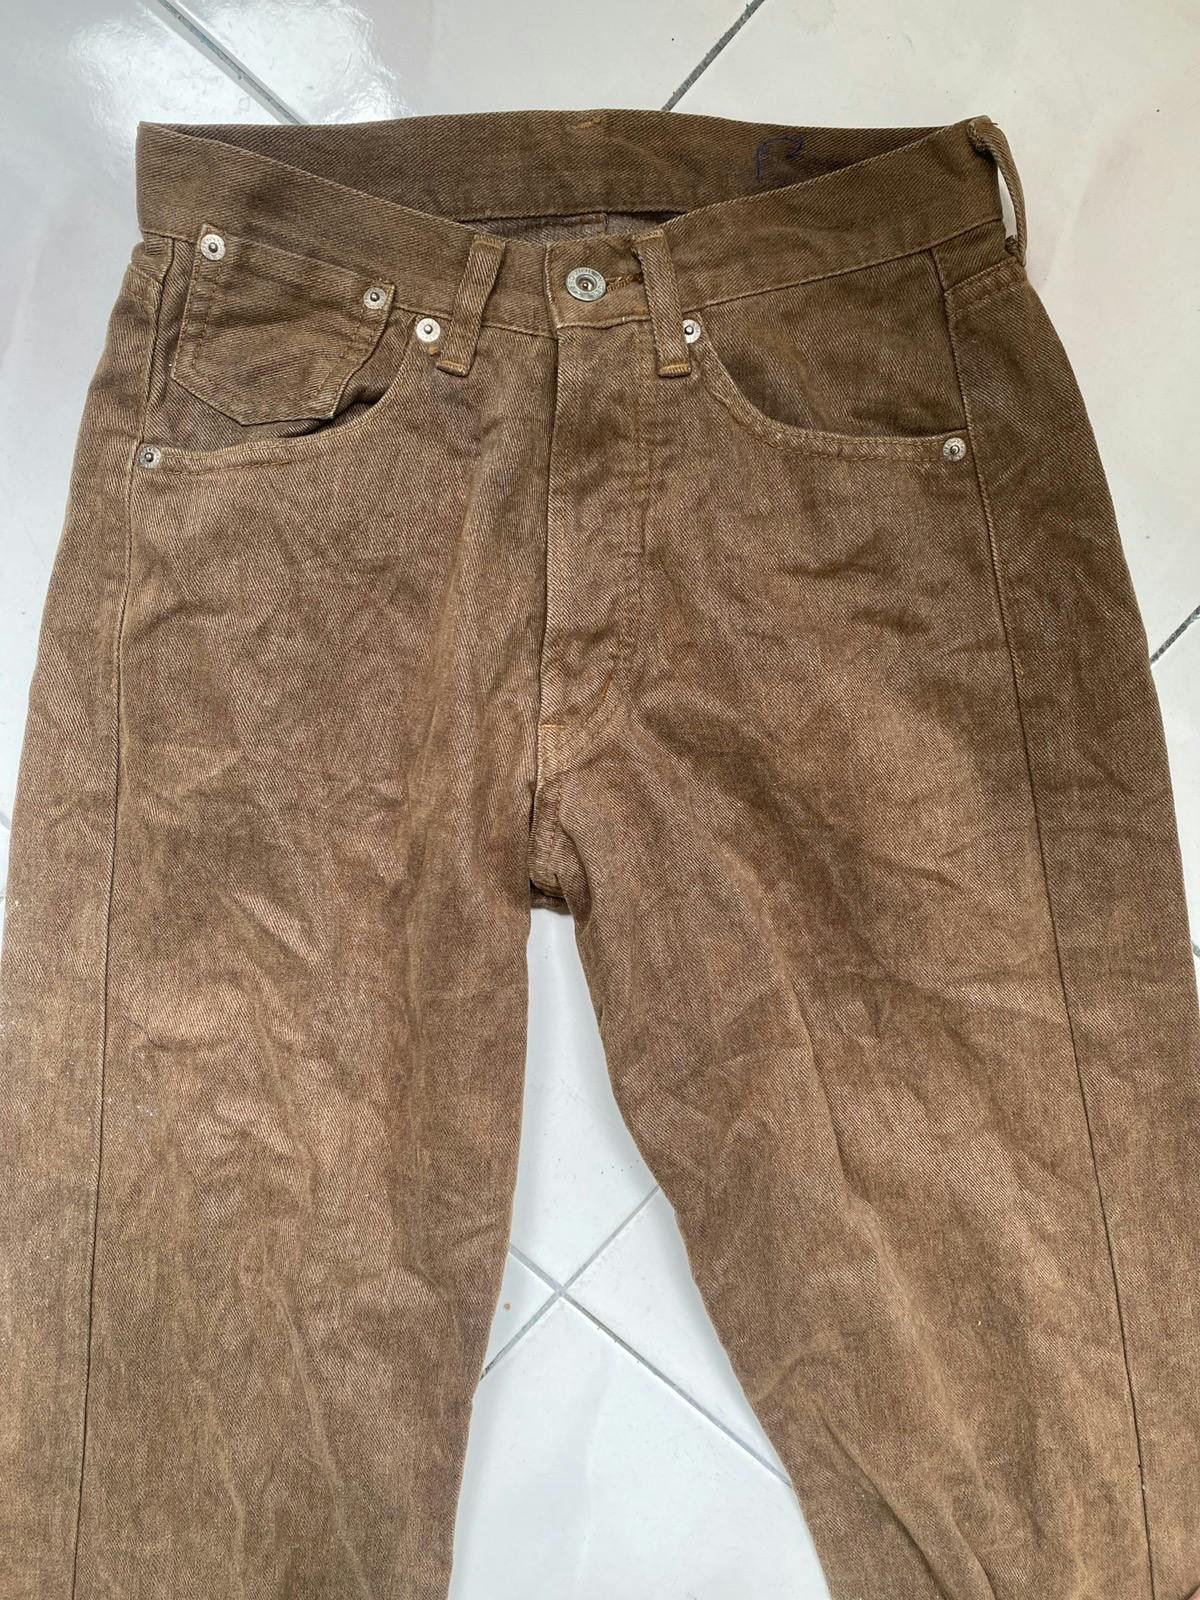 5 Pocket Denim Jeans Flare Bootcut - 4